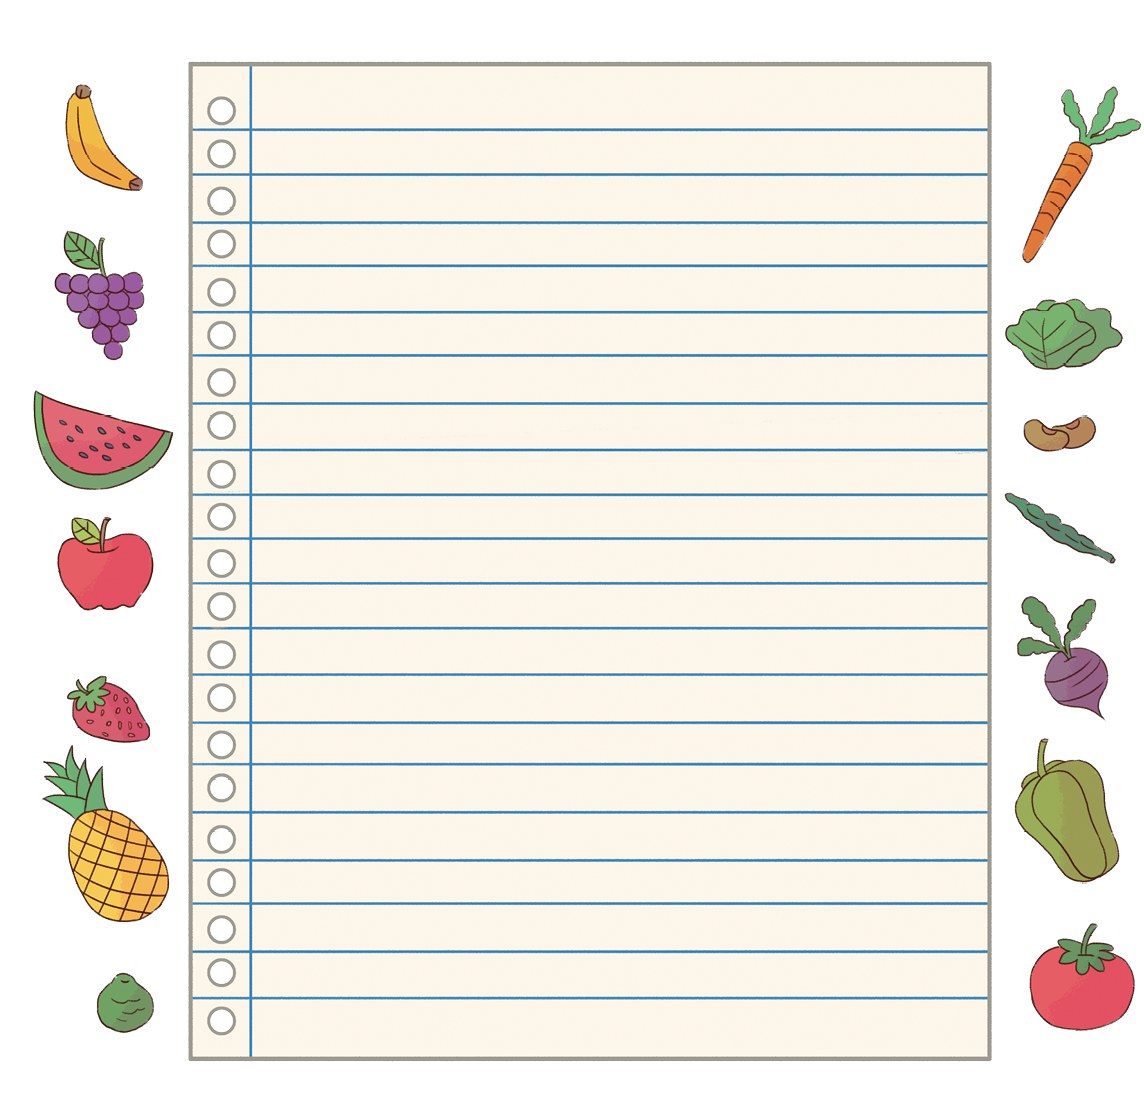 Imagem: Ilustração. Folha de papel com frutas à esquerda, sendo elas, banana, uva, melancia, maçã, morango, abacaxi e limão. À direita da folha de papel, vegetais, sendo eles, cenoura, alface, feijão, vagem, beterraba, chuchu e tomate. Fim da imagem.